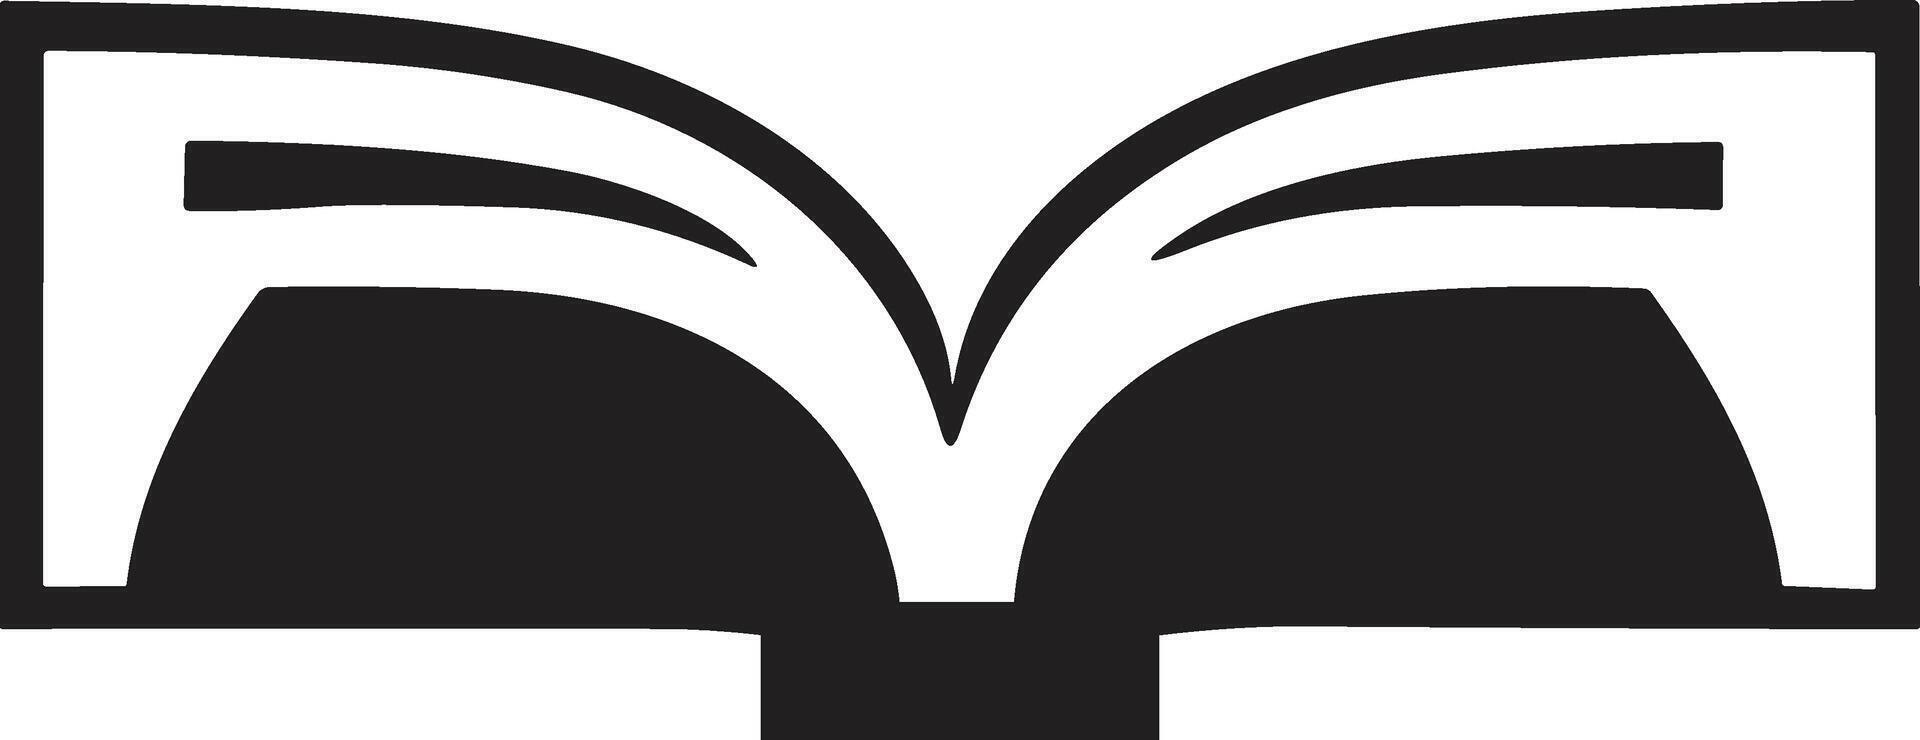 öffnen Buch Logo oder Abzeichen im Buchhandlung Konzept im Jahrgang oder retro Stil vektor